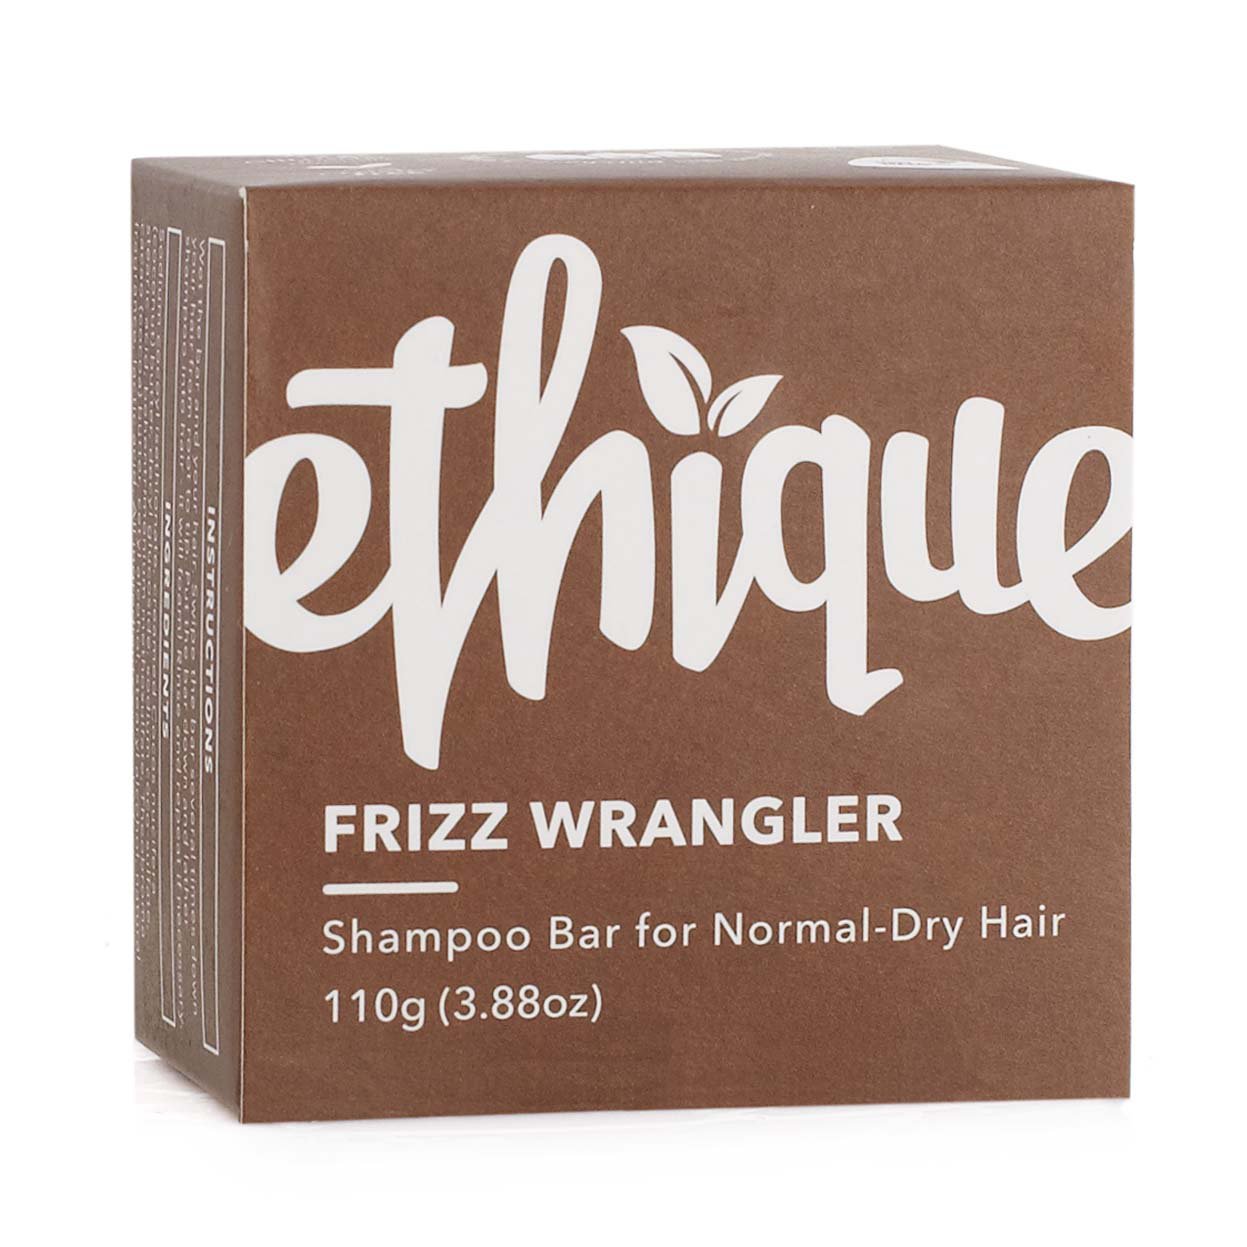 Frizz Wrangler Shampoo Bar for Normal-Dry - Shop Shampoo & at H-E-B